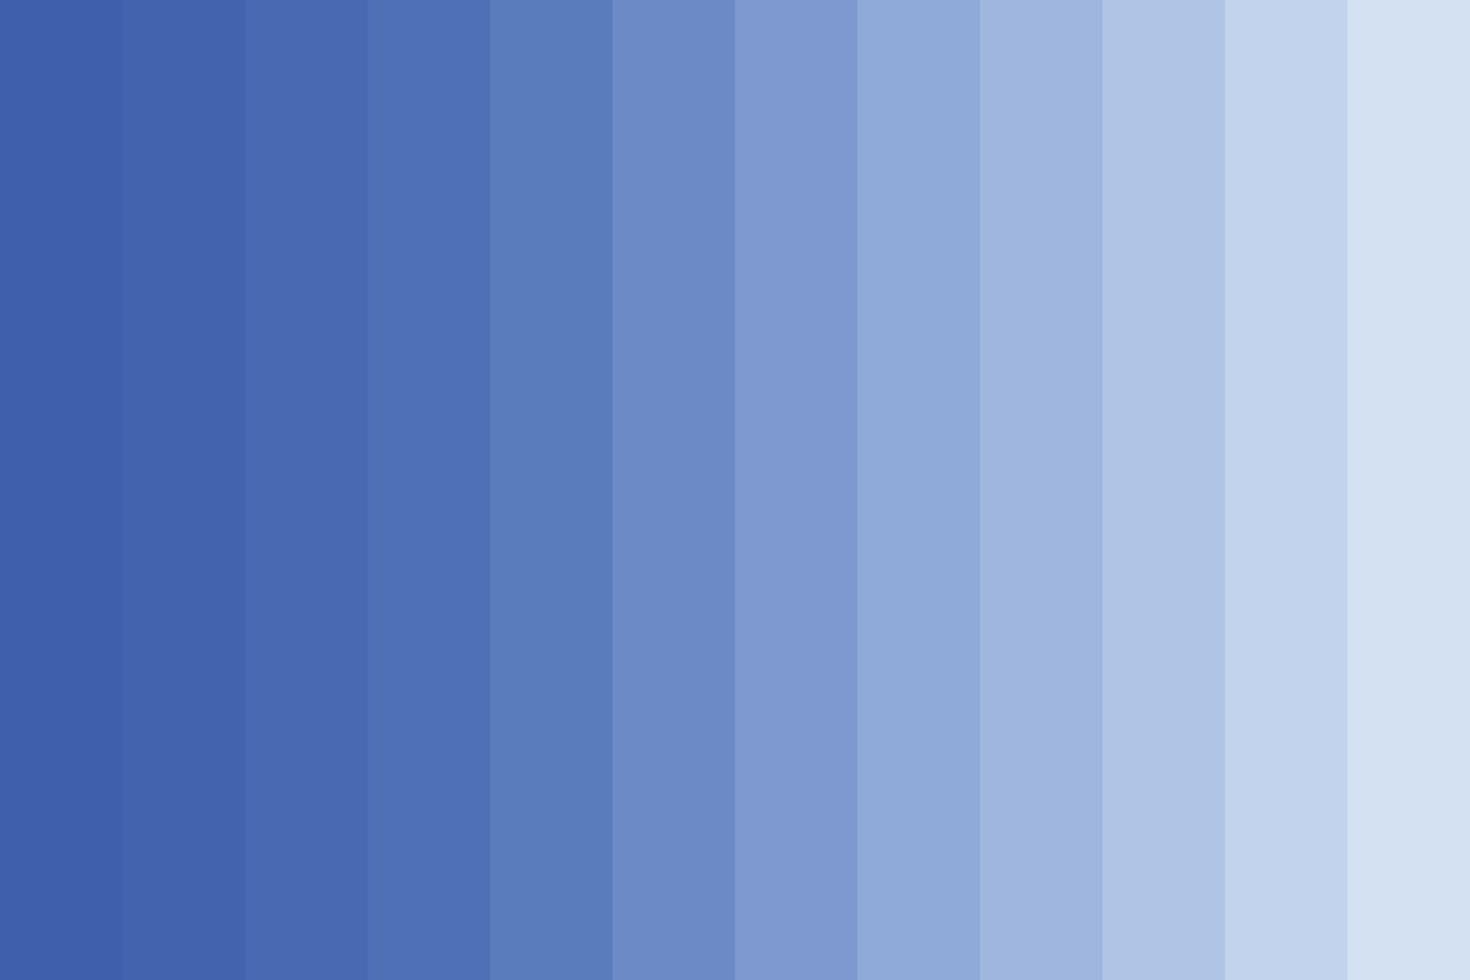 fond de vecteur plat de classement de couleur bleue. modèle graphique de dégradé de pigment de teinte bleue.